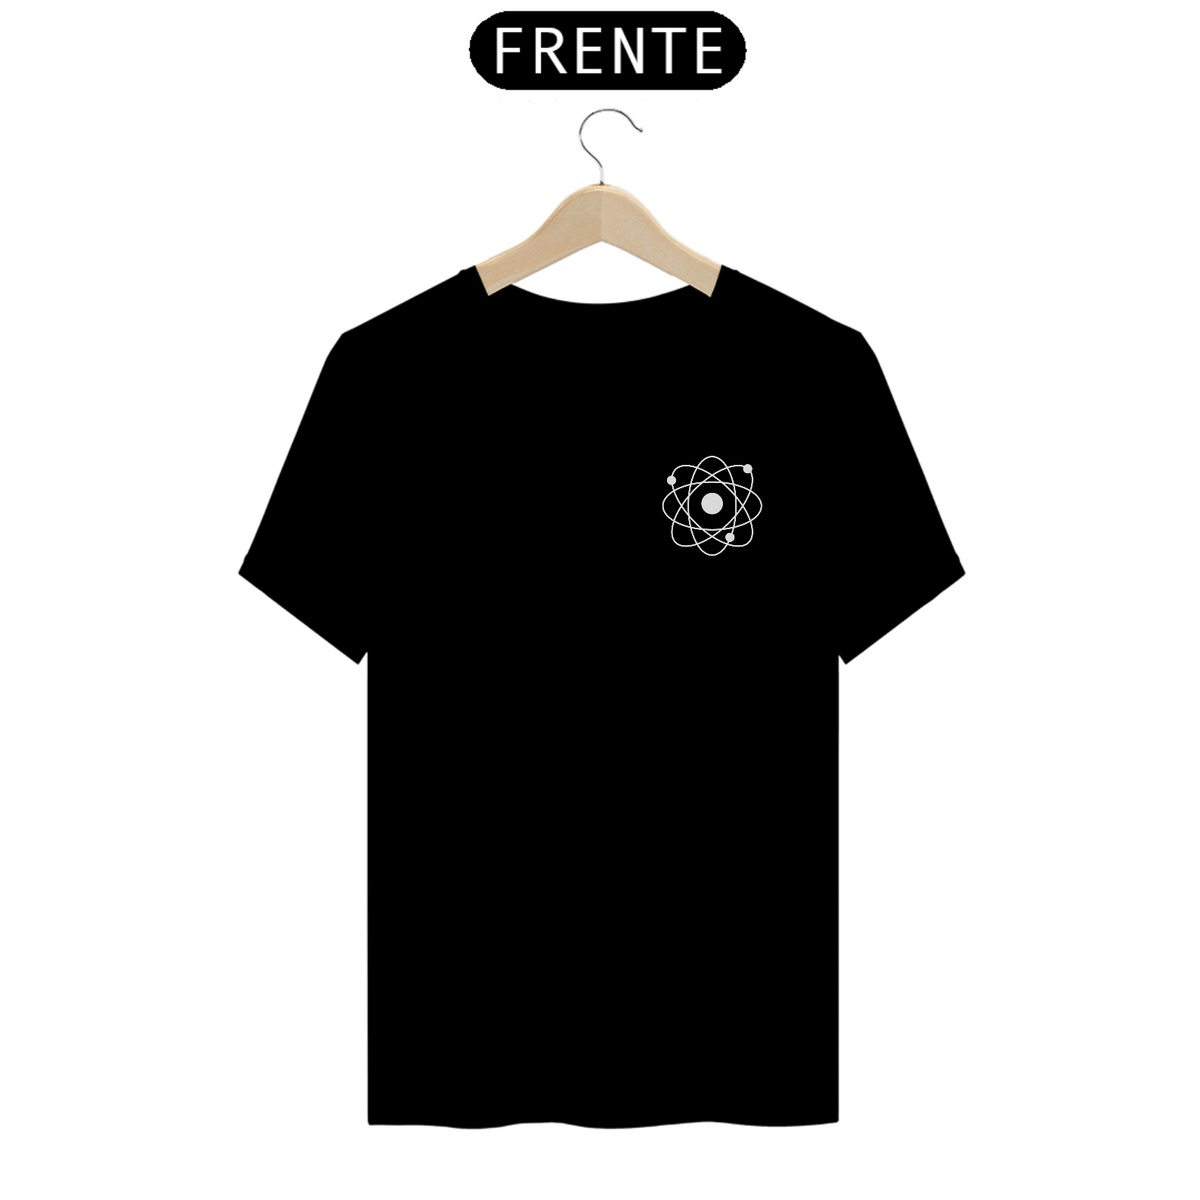 Nome do produto: Átomo - T-shirt (cores escuras)